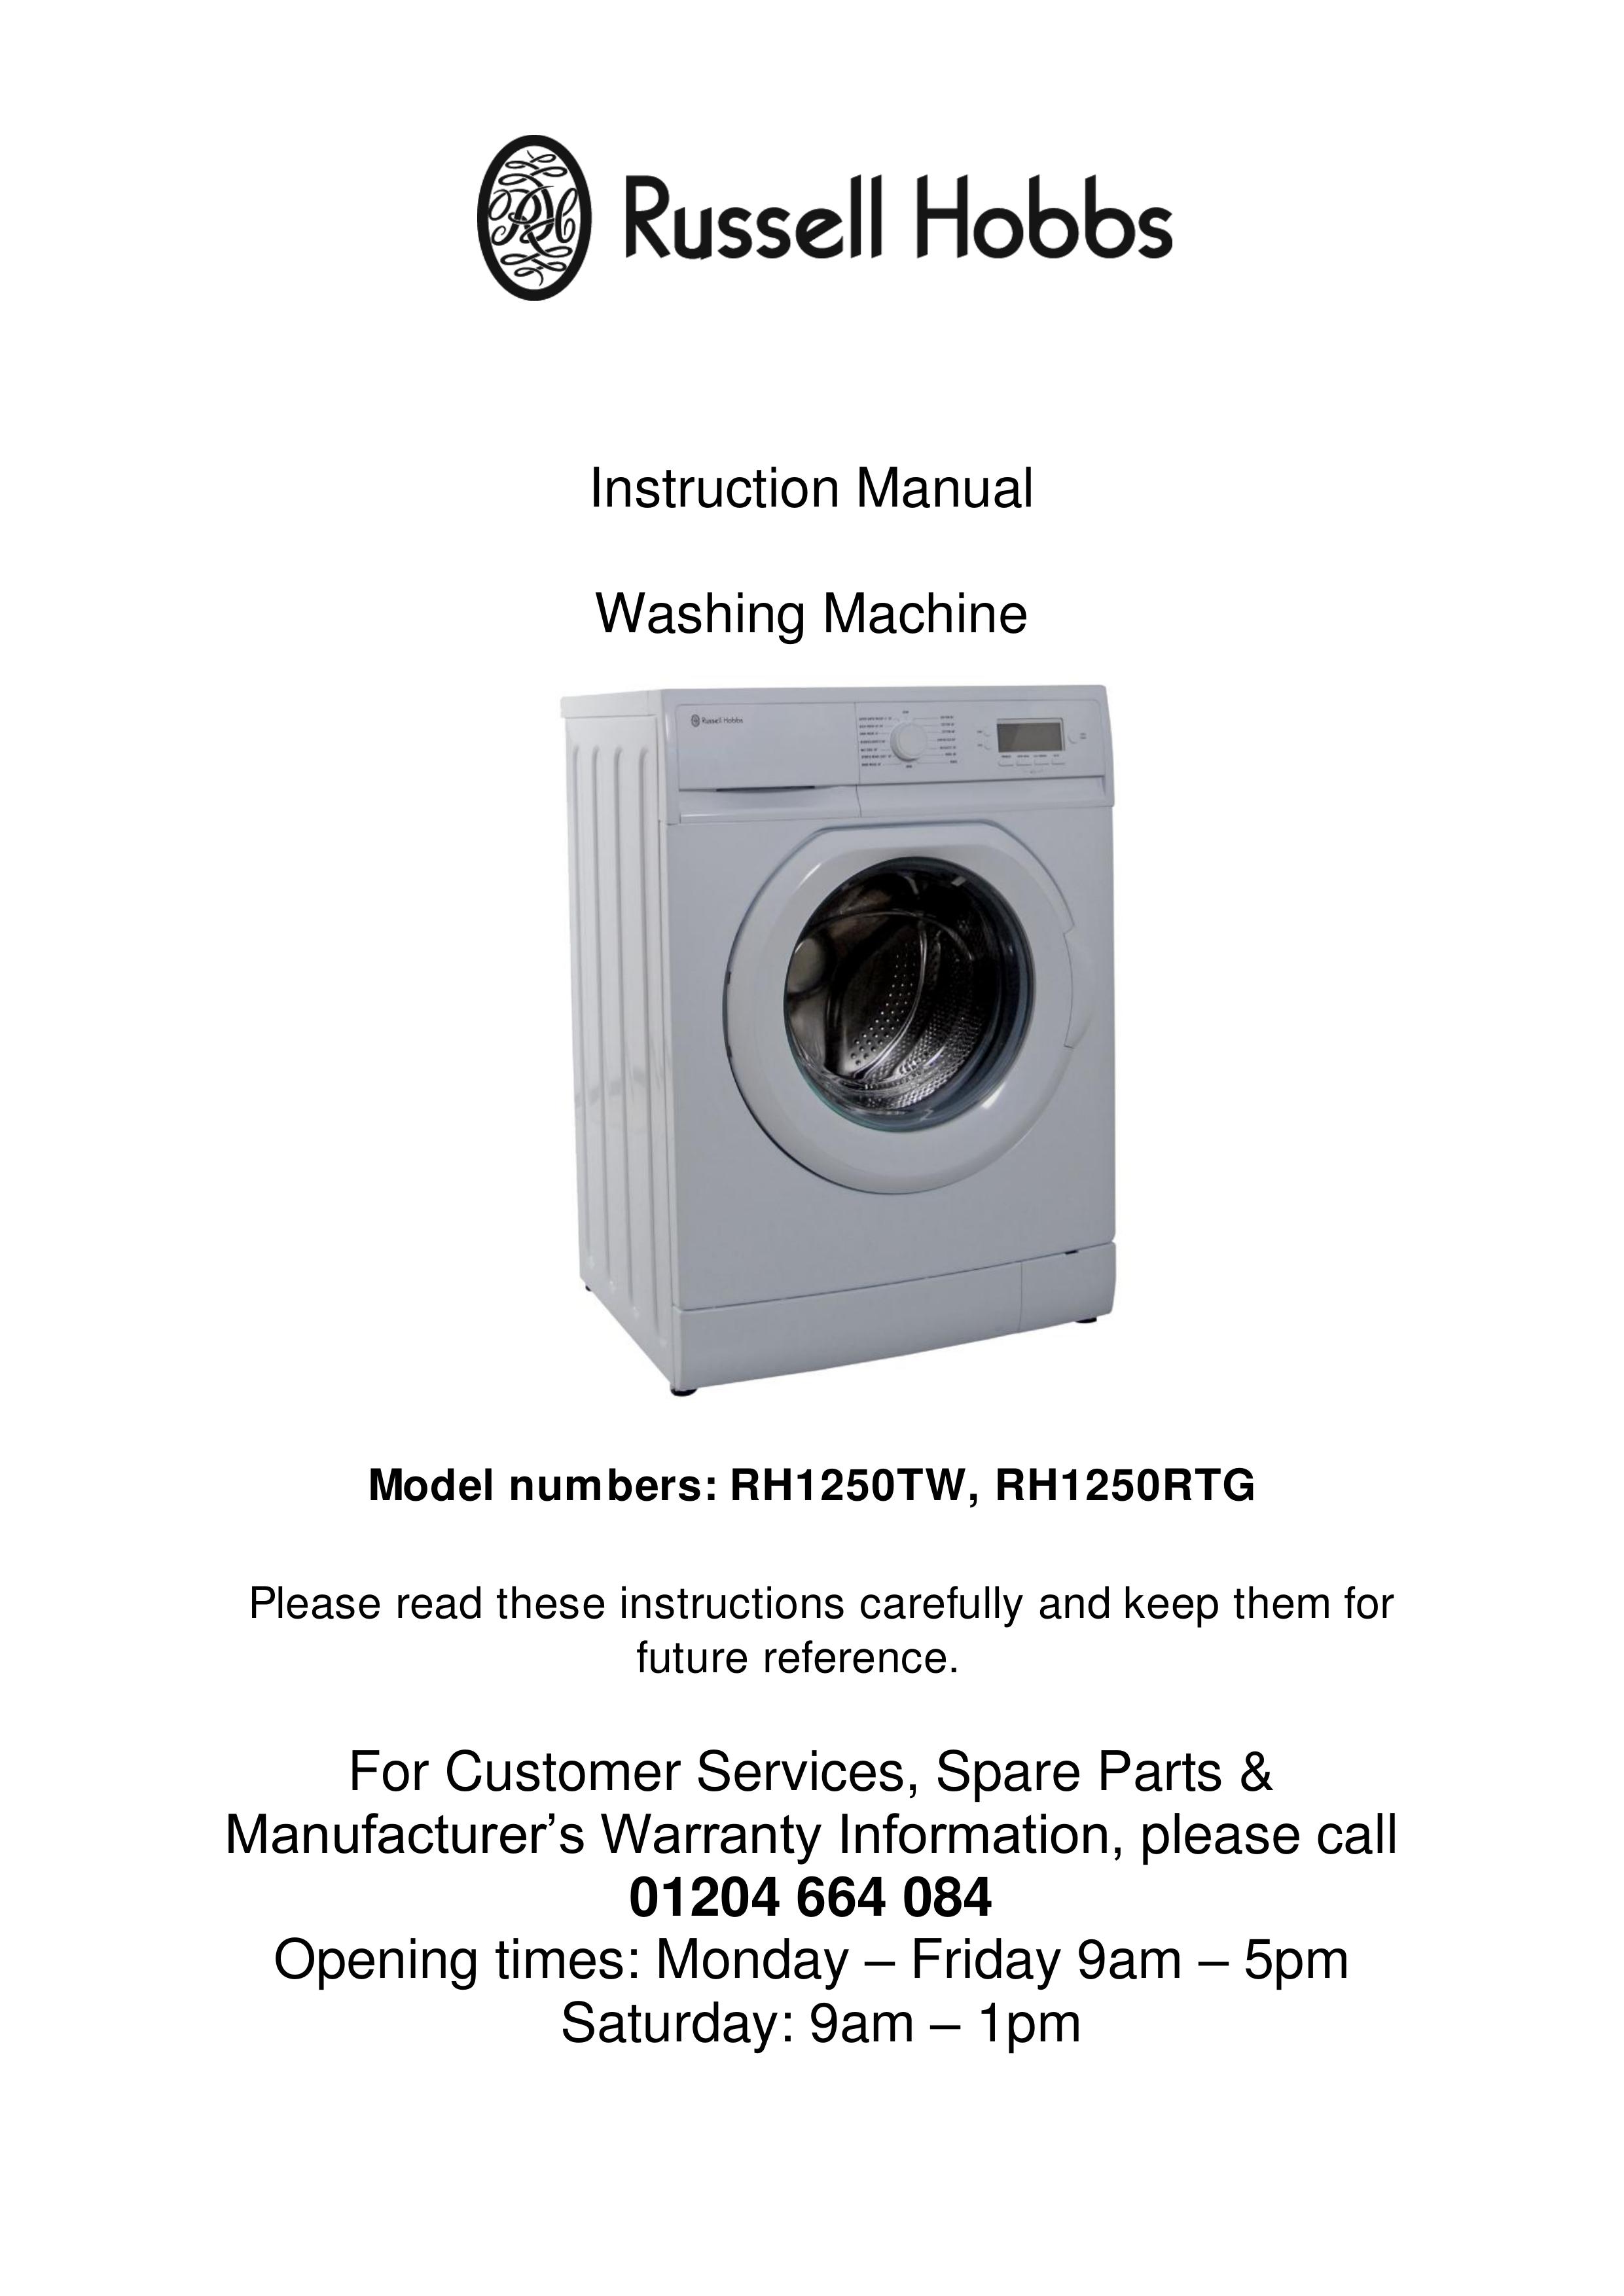 Russell Hobbs RH1250RTG Washer User Manual